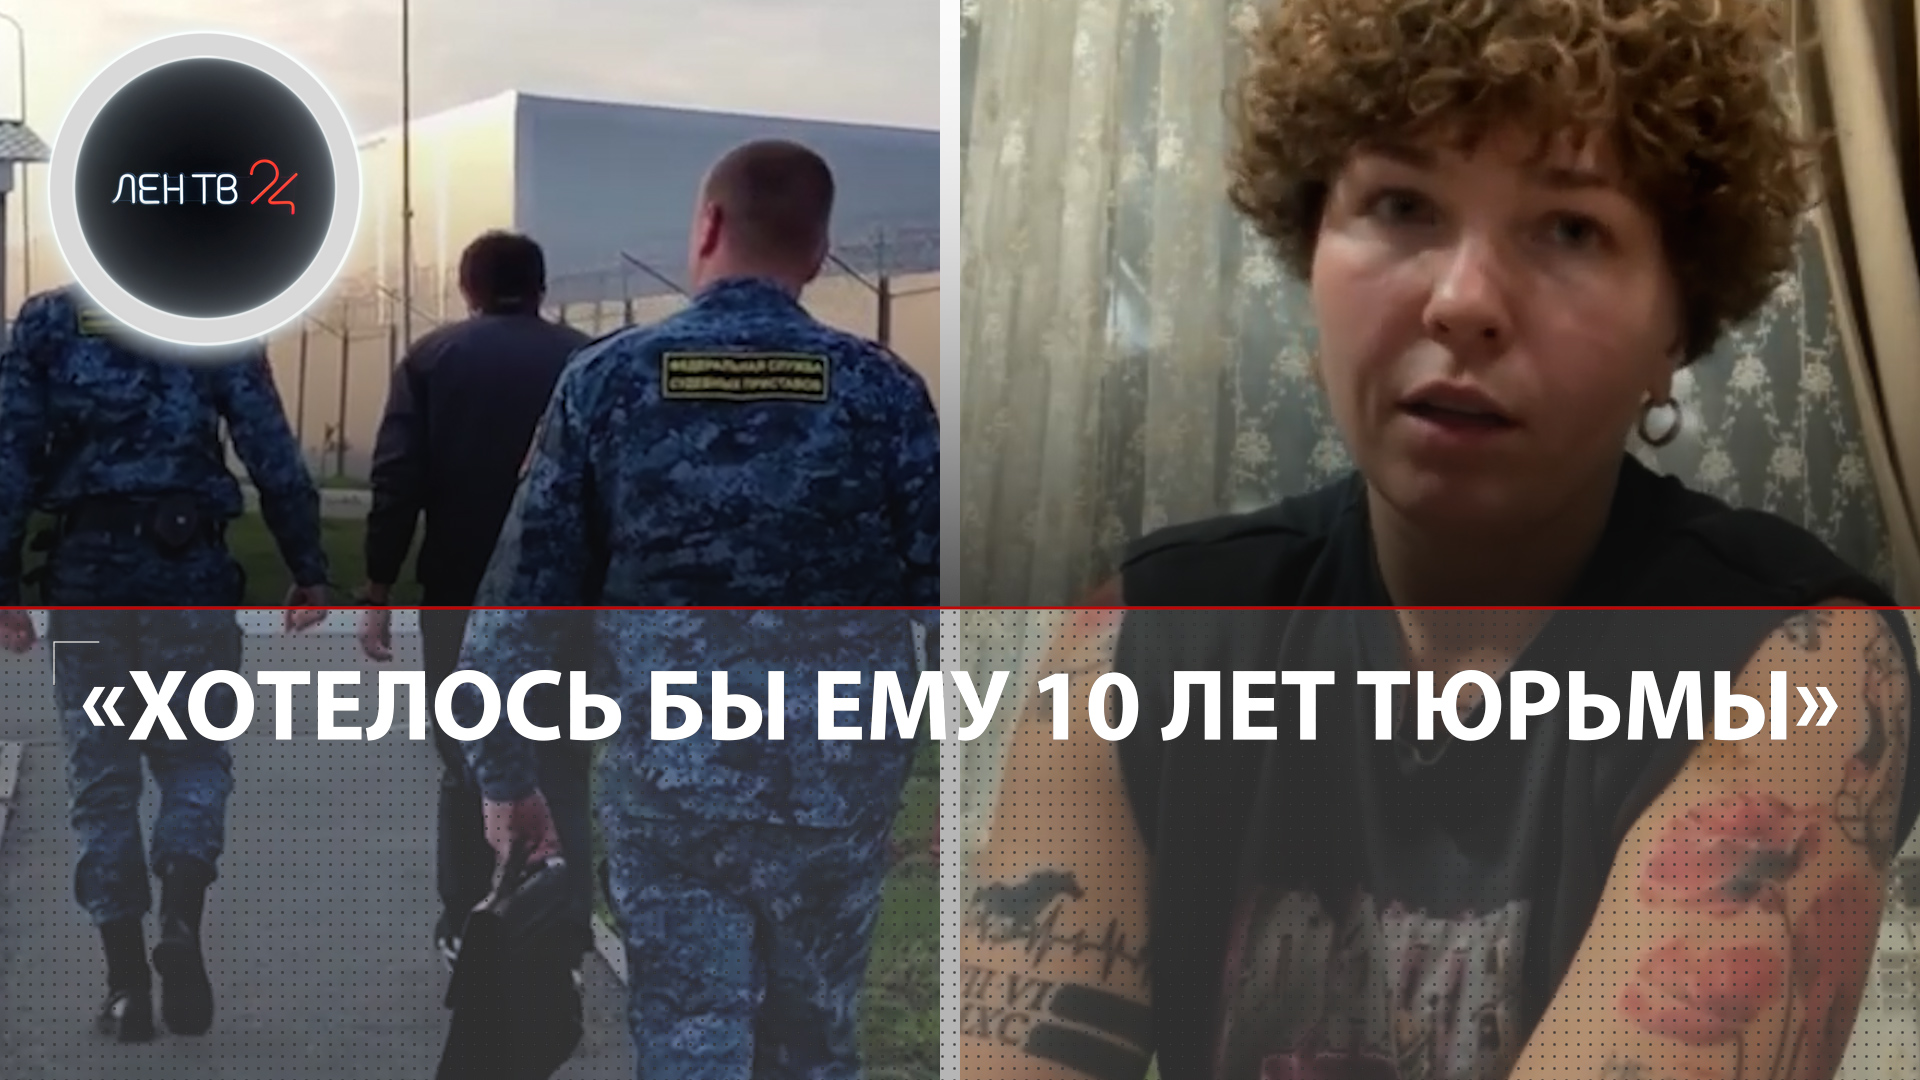 Русская девушка-боец UFC боится расправы после конфликта c «бойцом за нравственность» | Интервью